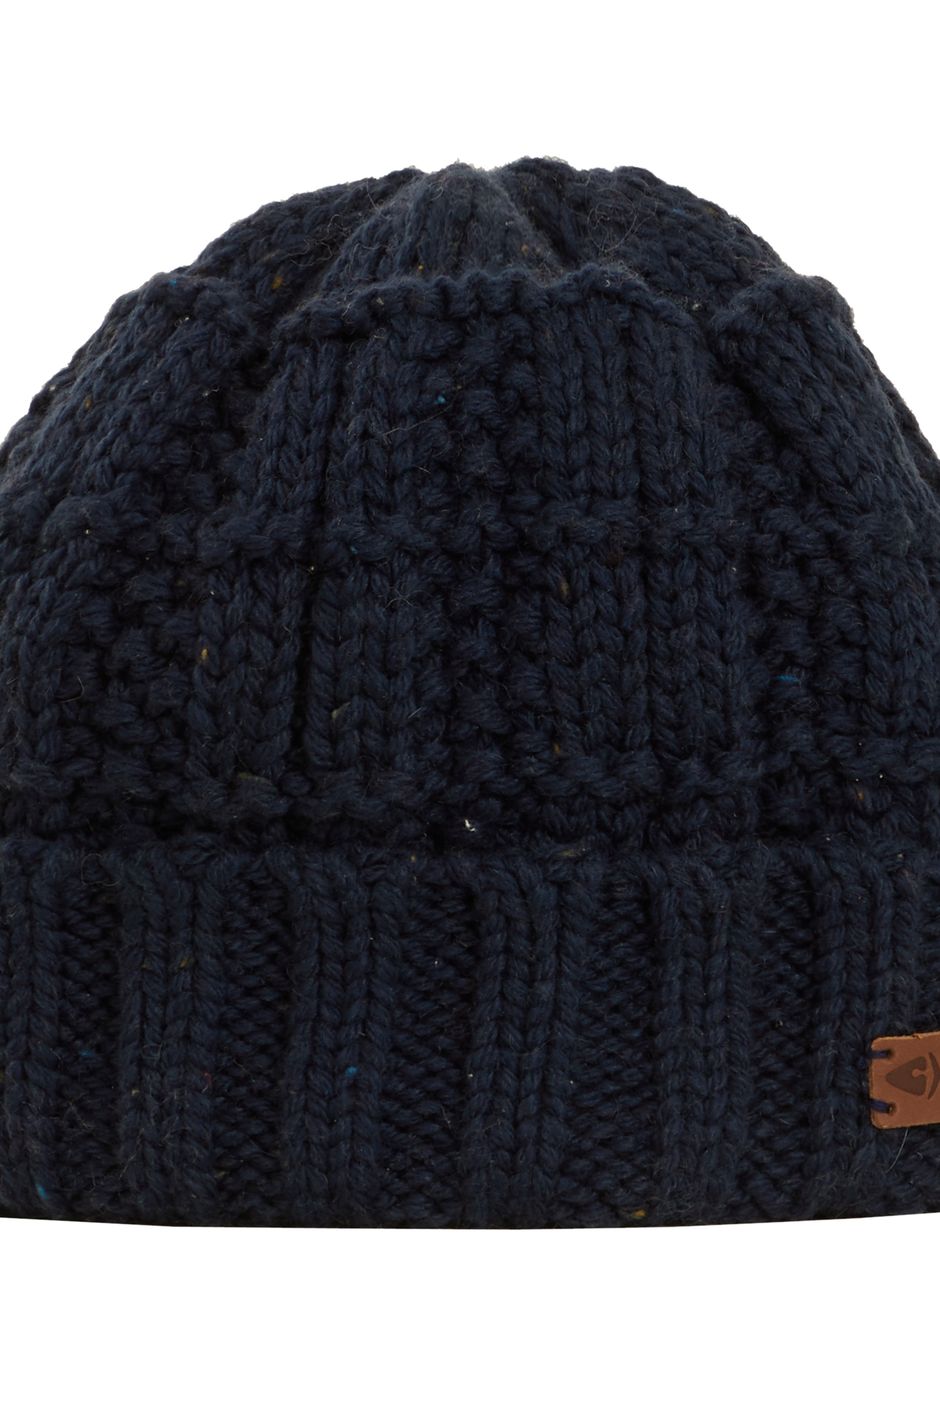 Scotia Knit Beanie Hat Navy